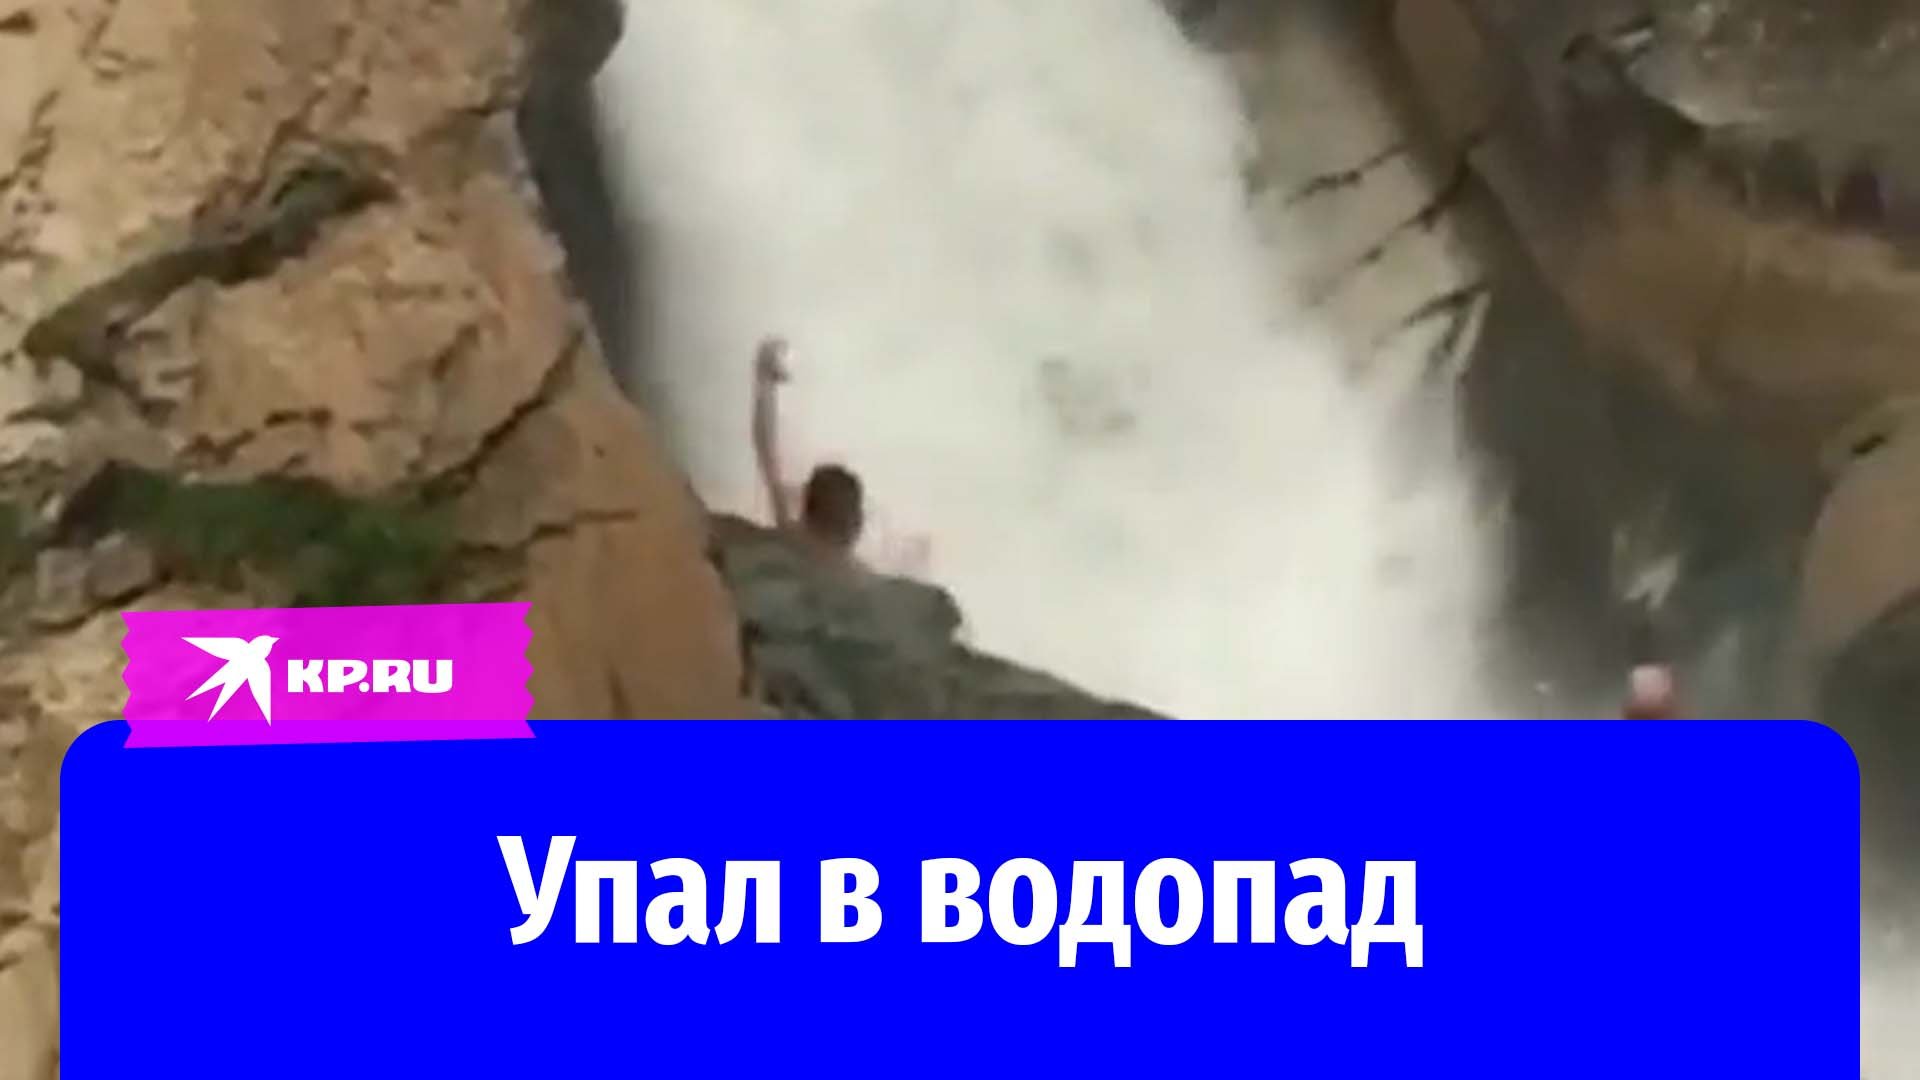 Салтинский водопад Дагестан